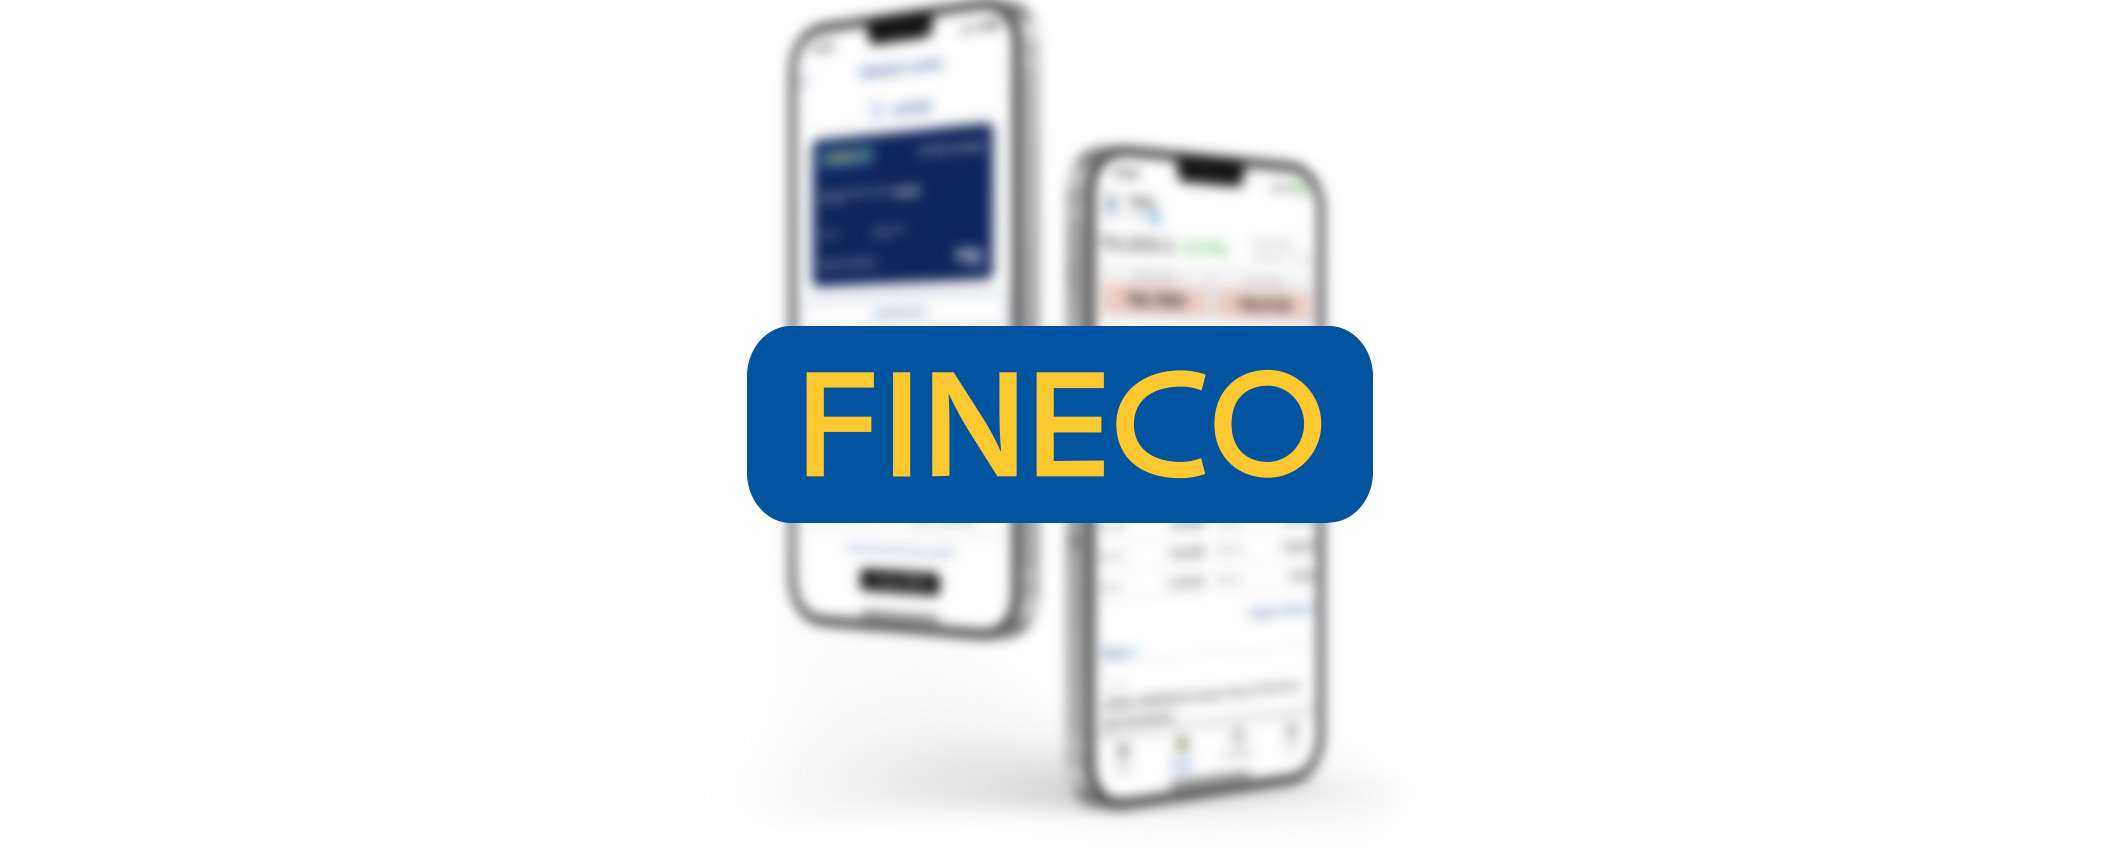 Fineco: canone gratis per gli under 30 e altri vantaggi